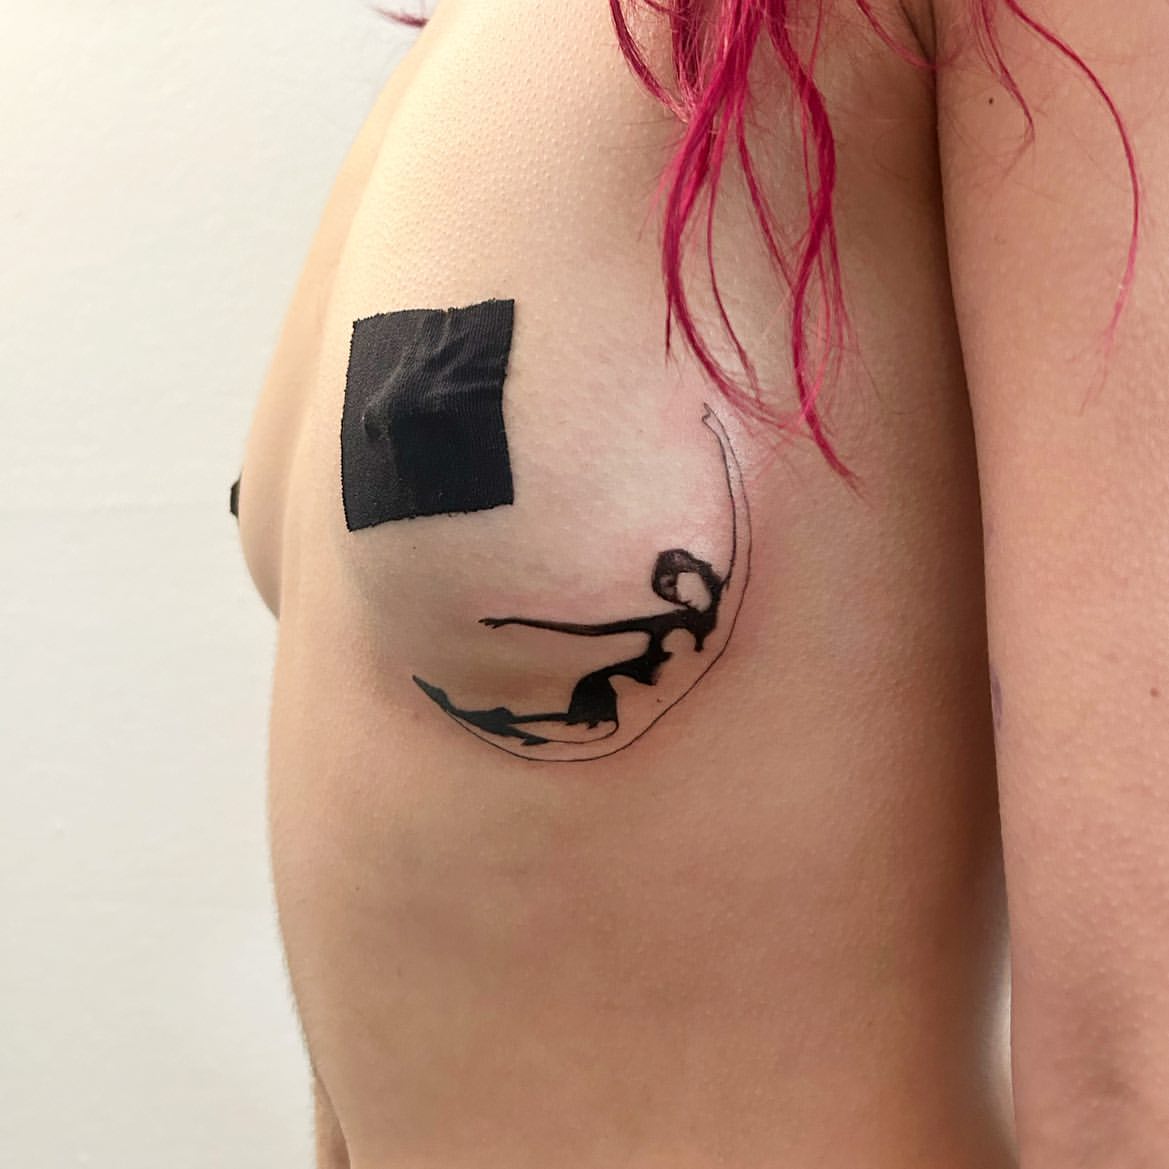 Cute Tattoo Ideas, Sexy Tattoo Ideas For Women, Underboob Tattoo